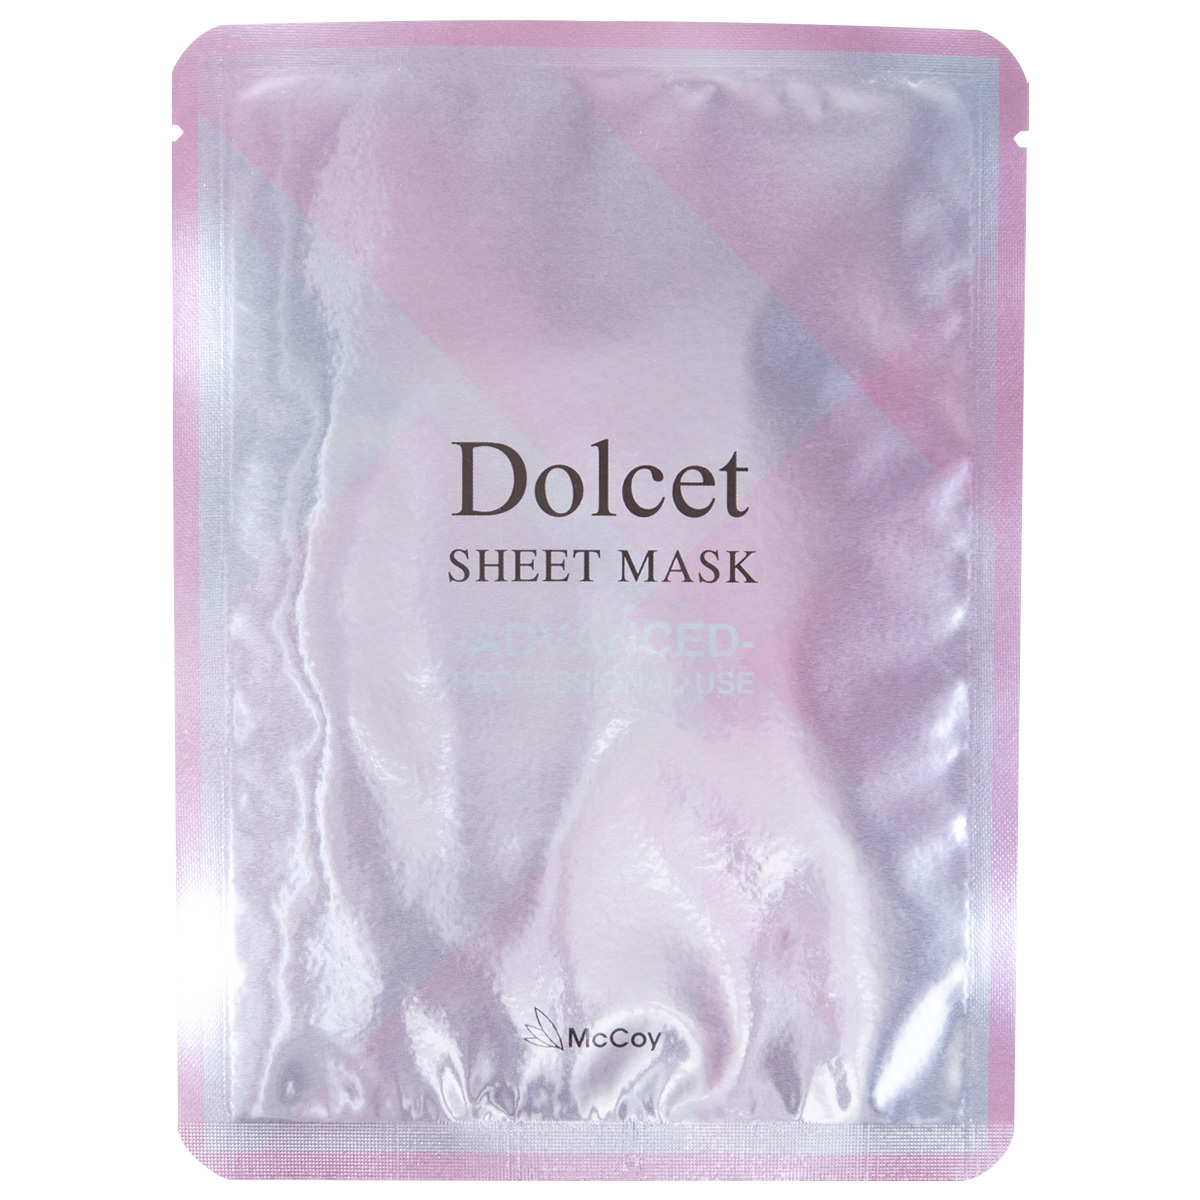 McCoy Dolcet Sheet Mask. Тканевая маска для увлажнения и упругости кожи груди Дольсет МакКой, 4 шт.